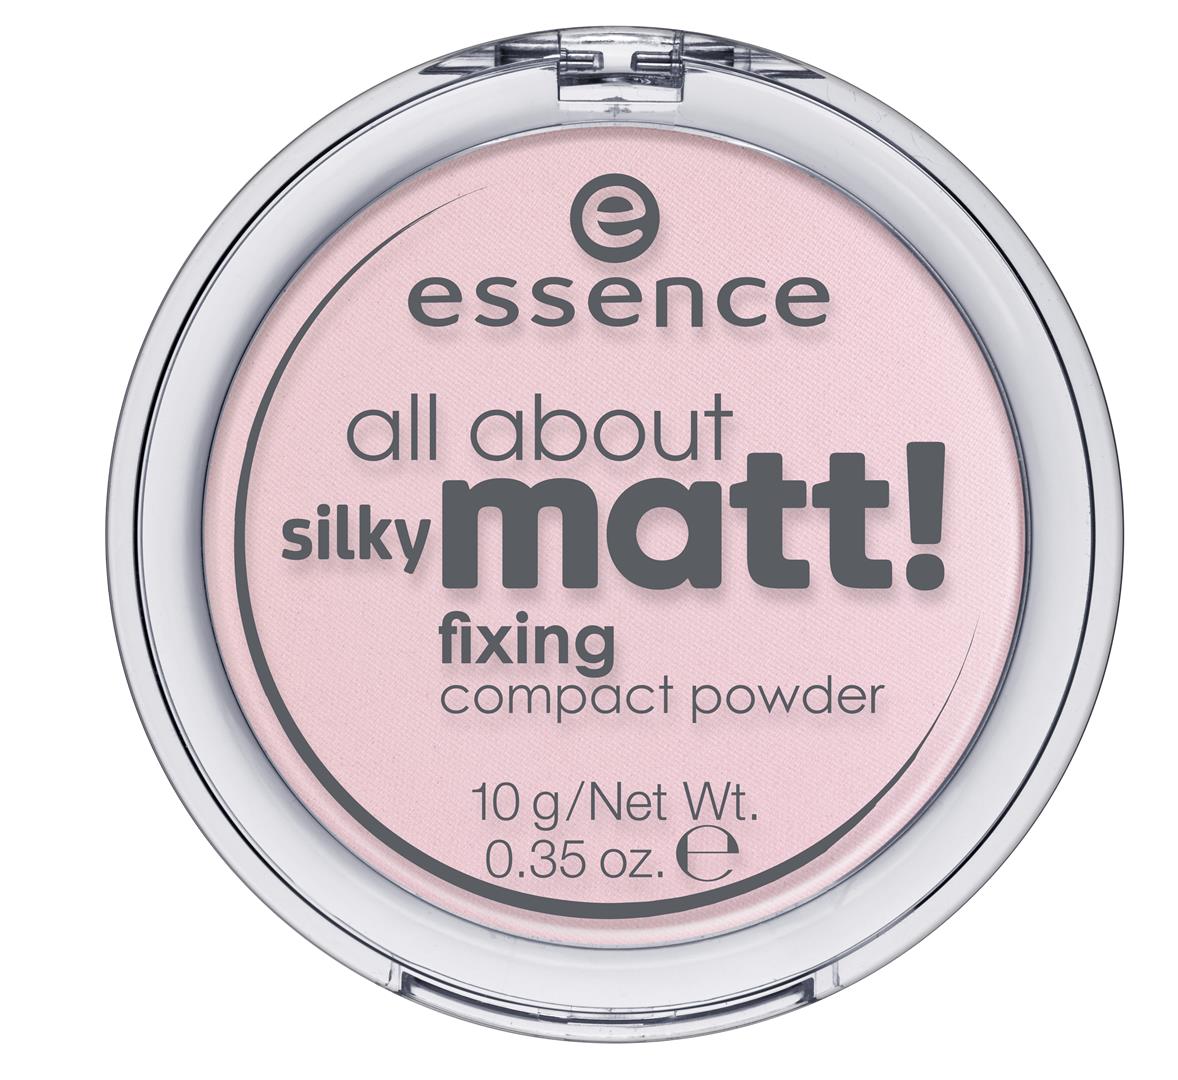 ess.all about silky matt! fixing compact powder 10